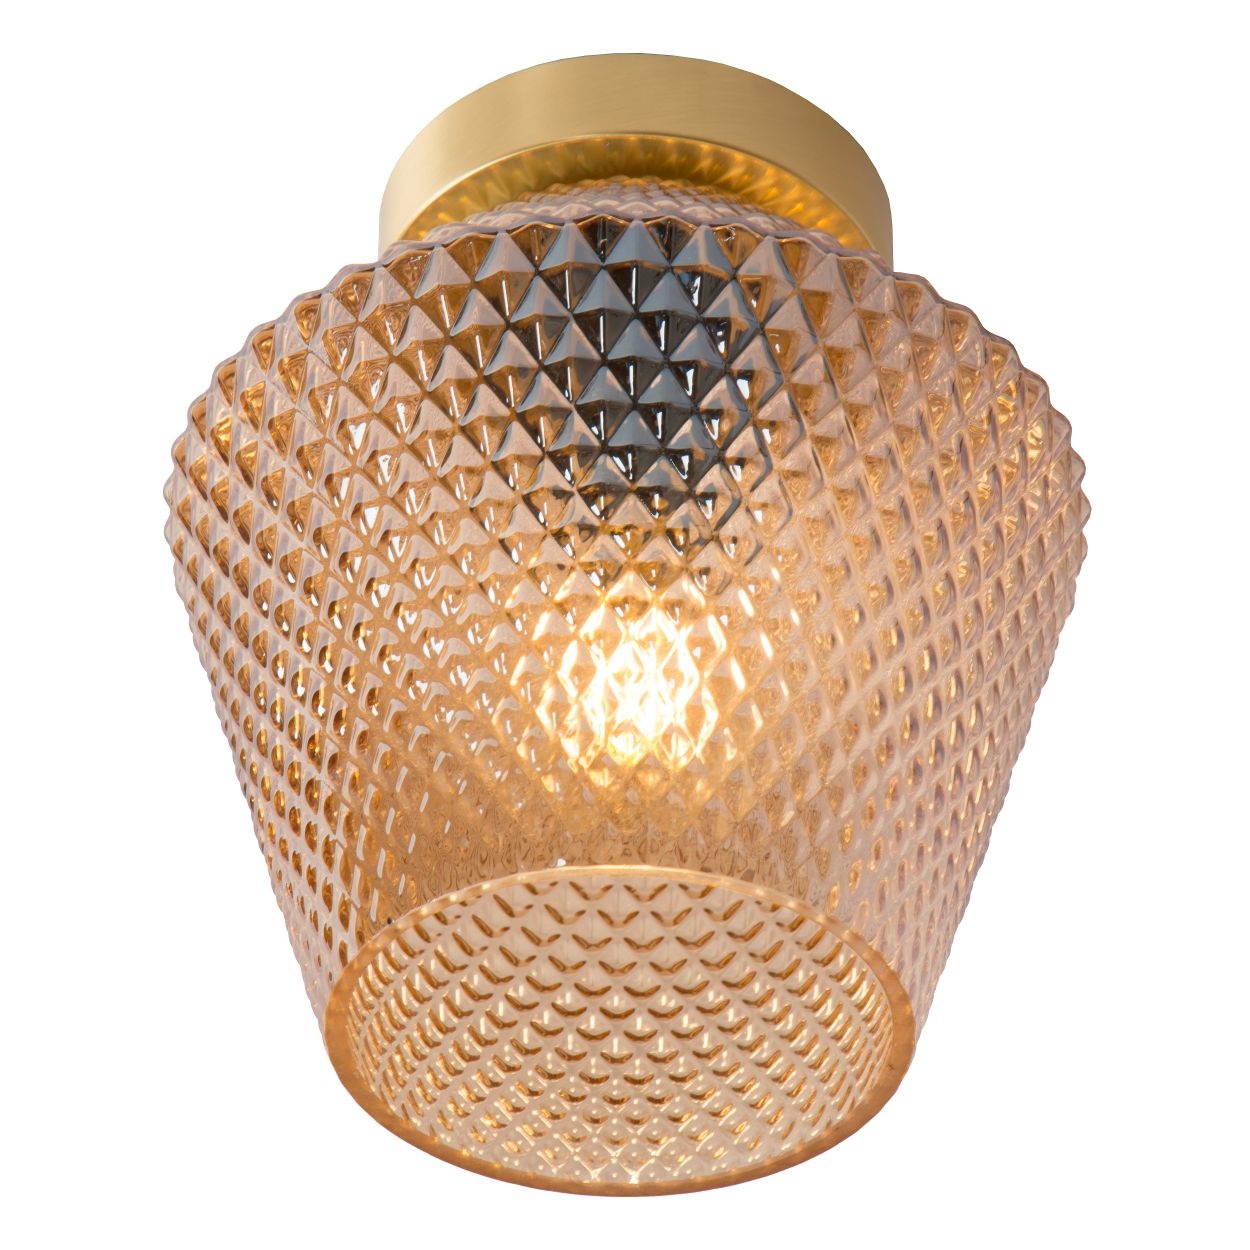 Lampe mit Kristallglas 40cm Ø oder 50cm Ø